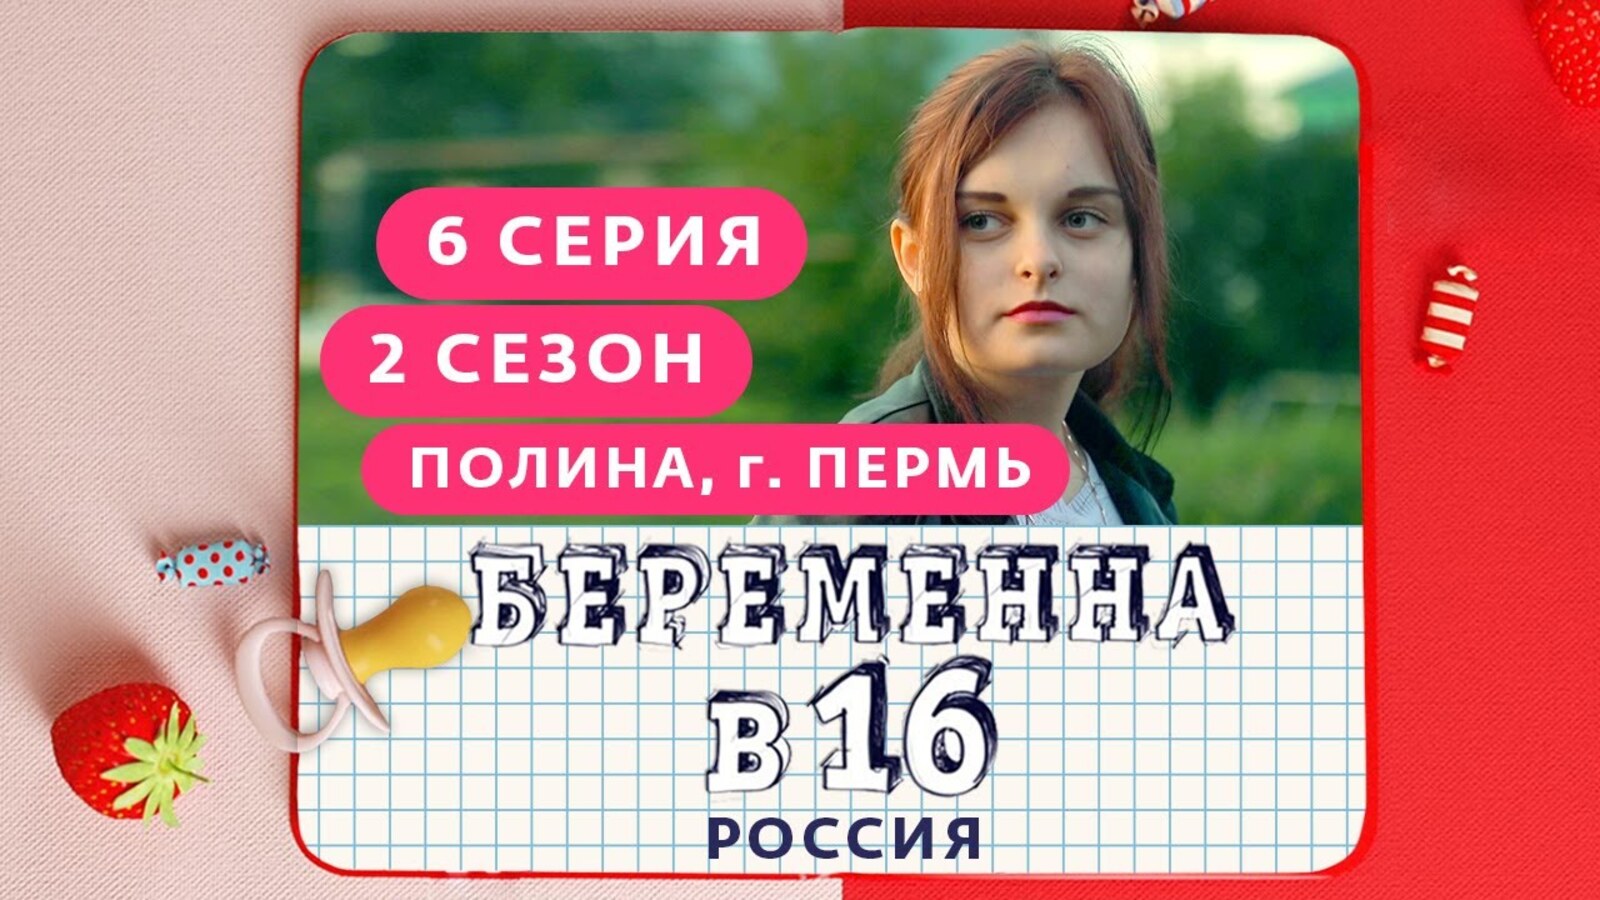 Российский шестнадцать